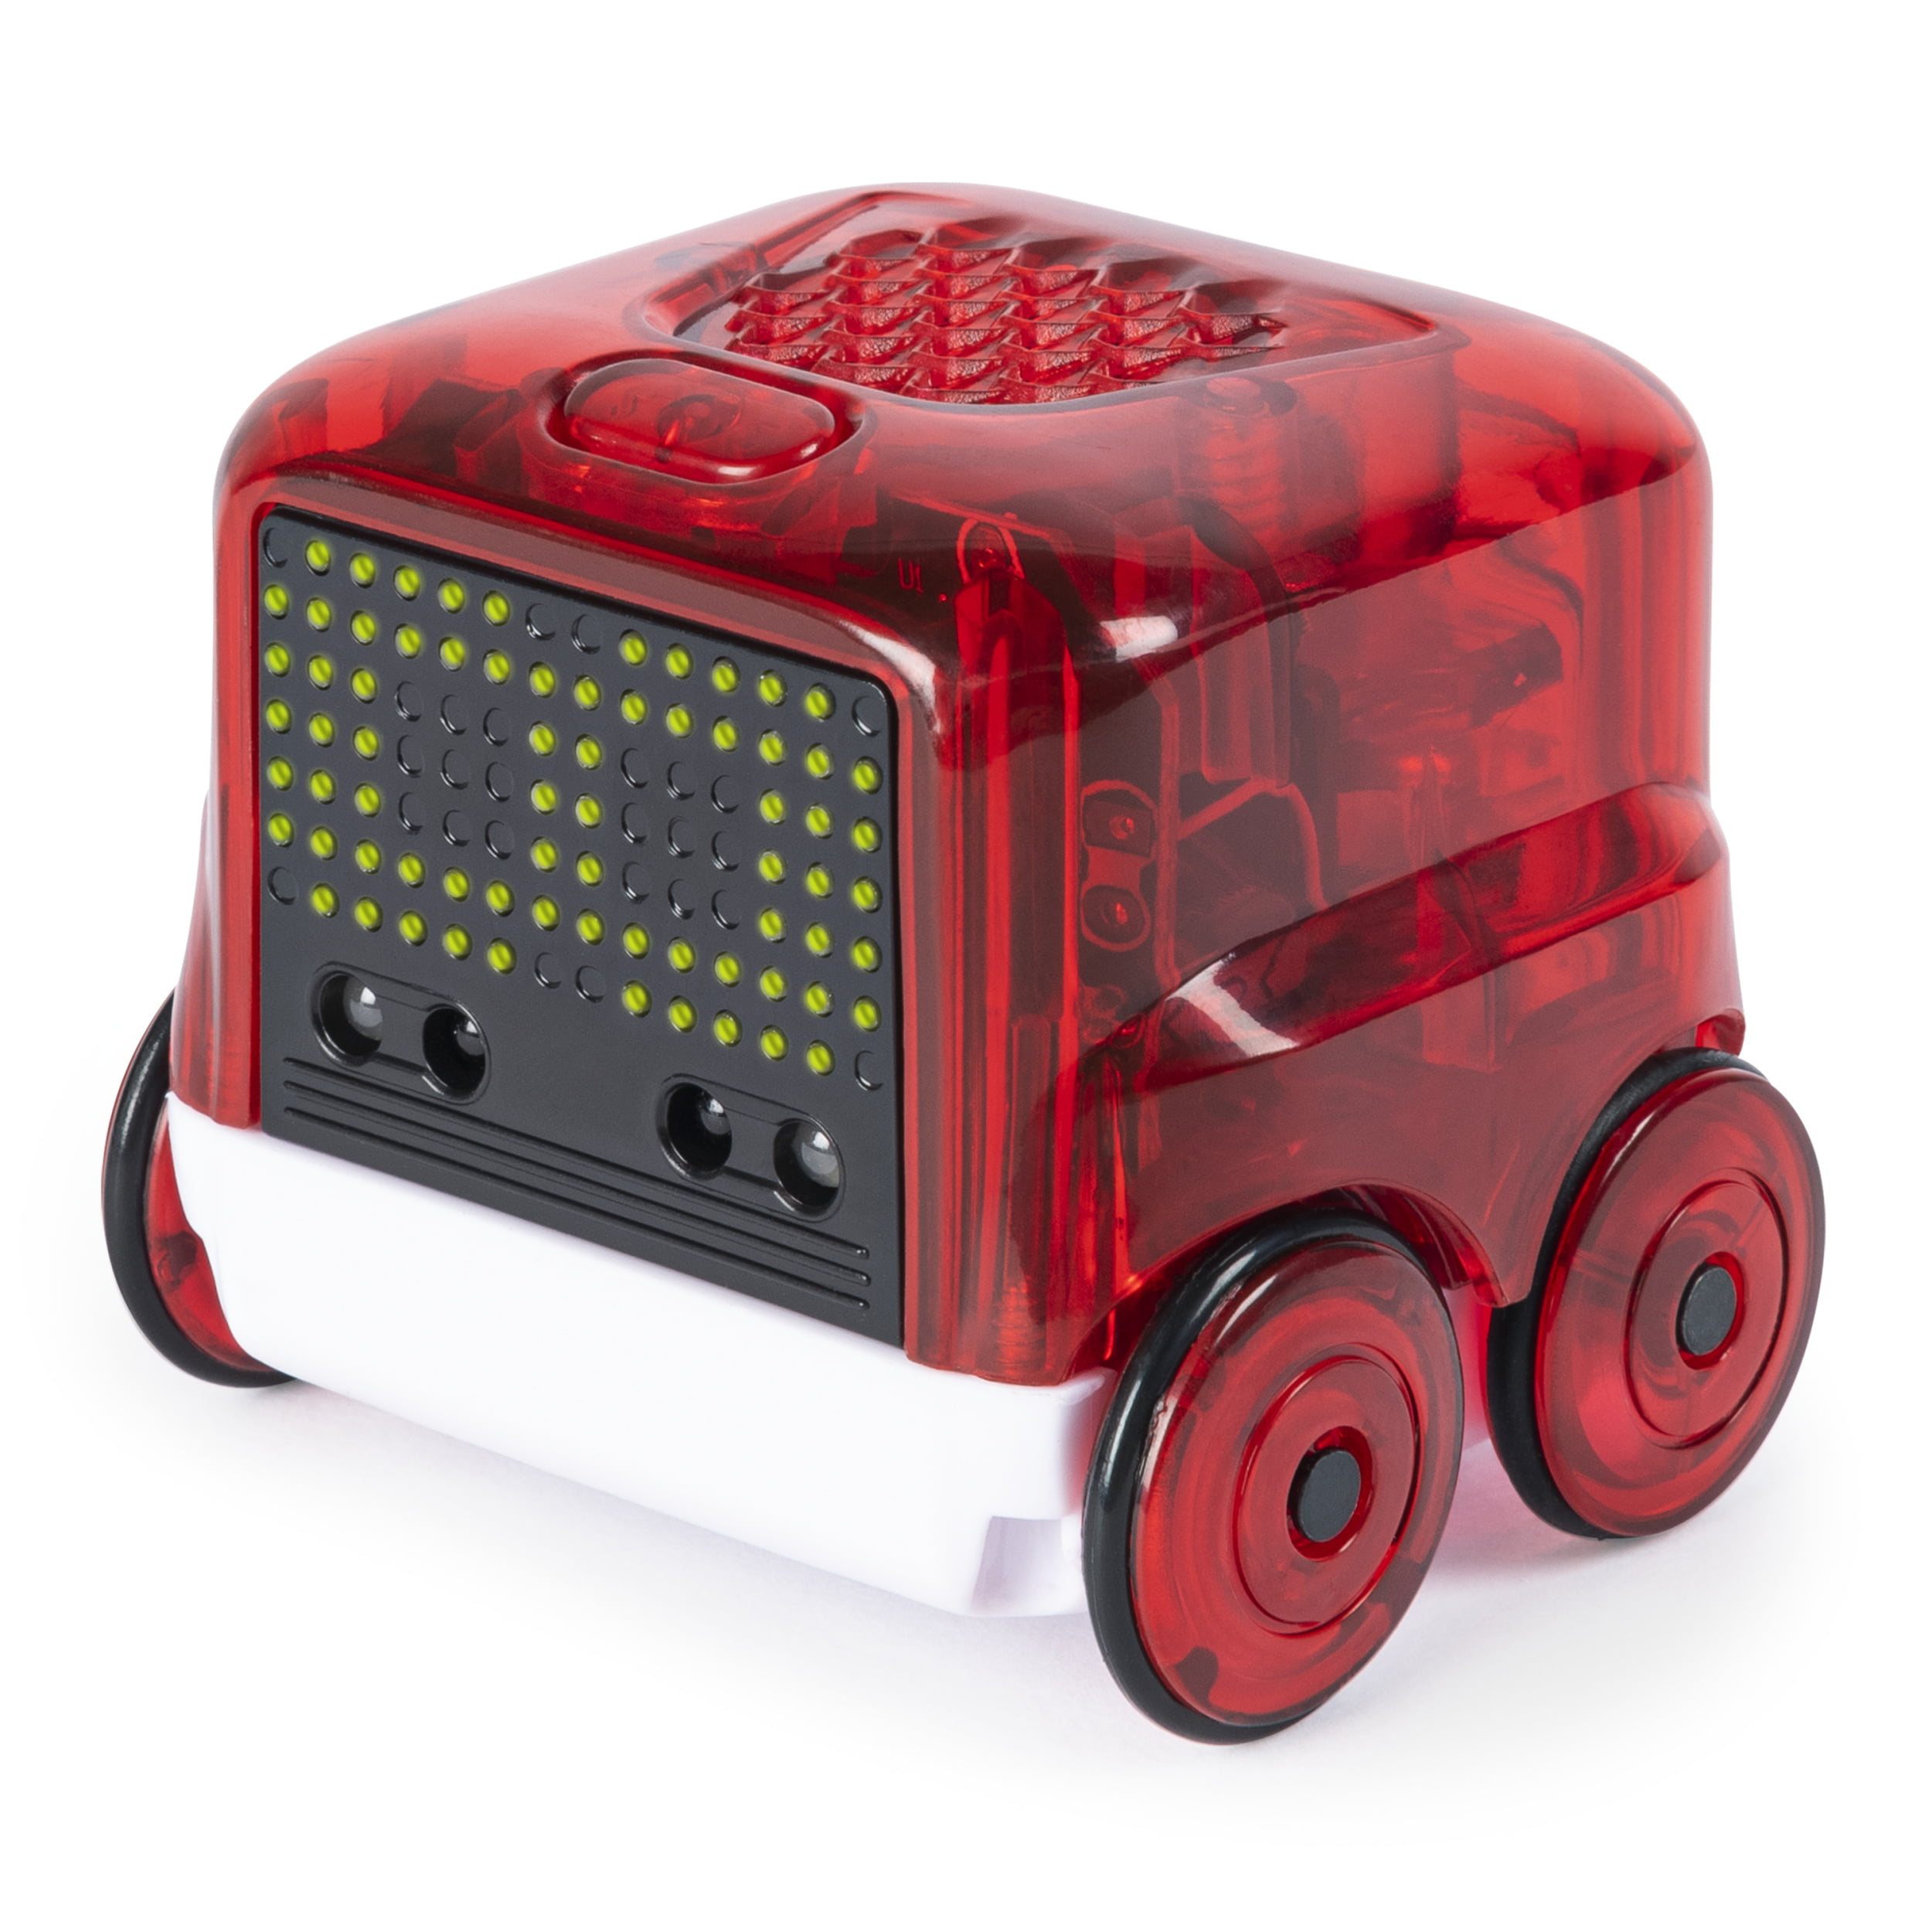 Робот master. Spin Master робот. Красный робот. Строительная игрушка Spin Master робот.